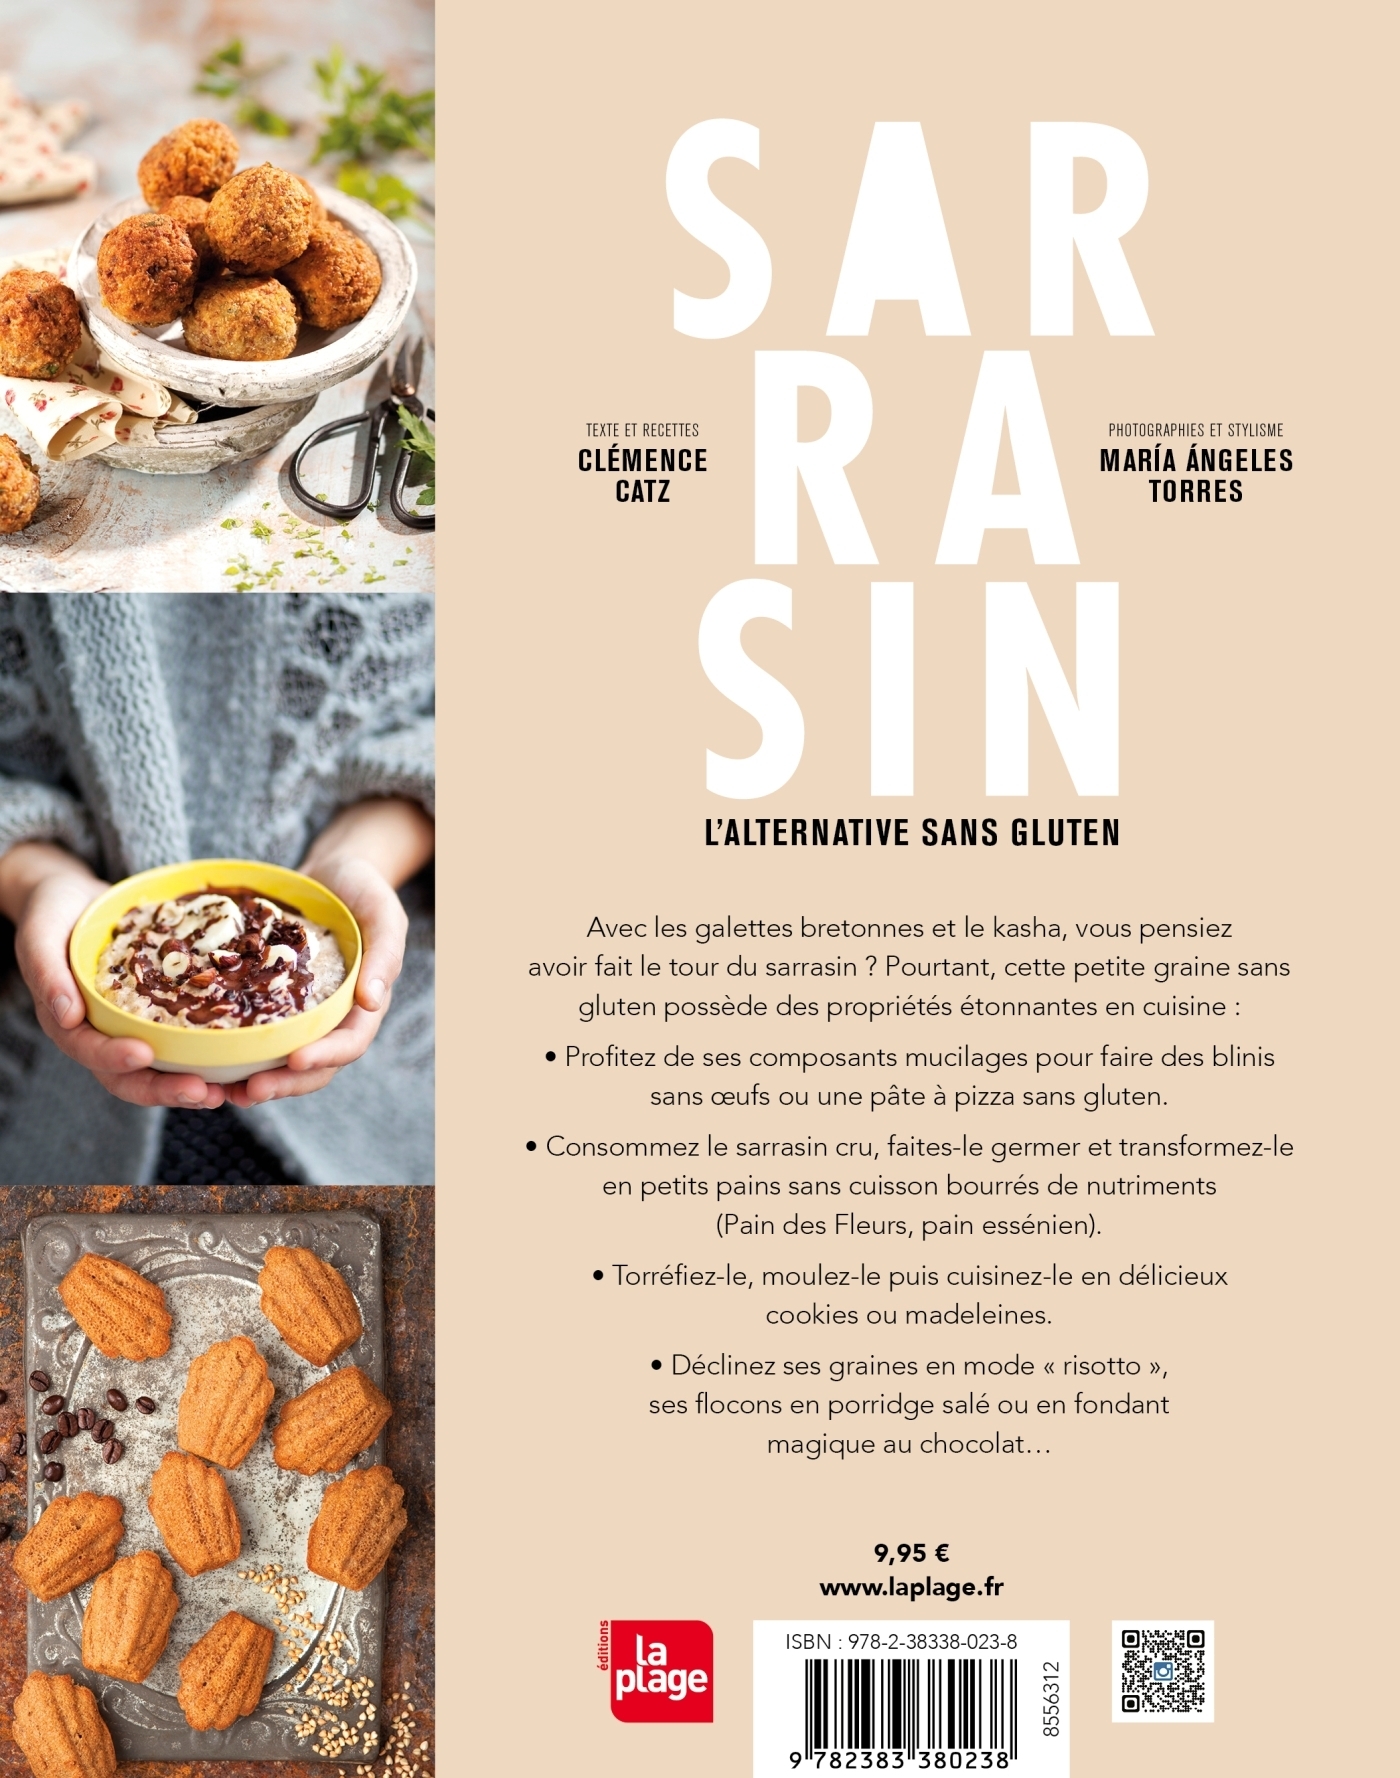 Sarrasin torréfié - Achat, utilisation, recettes